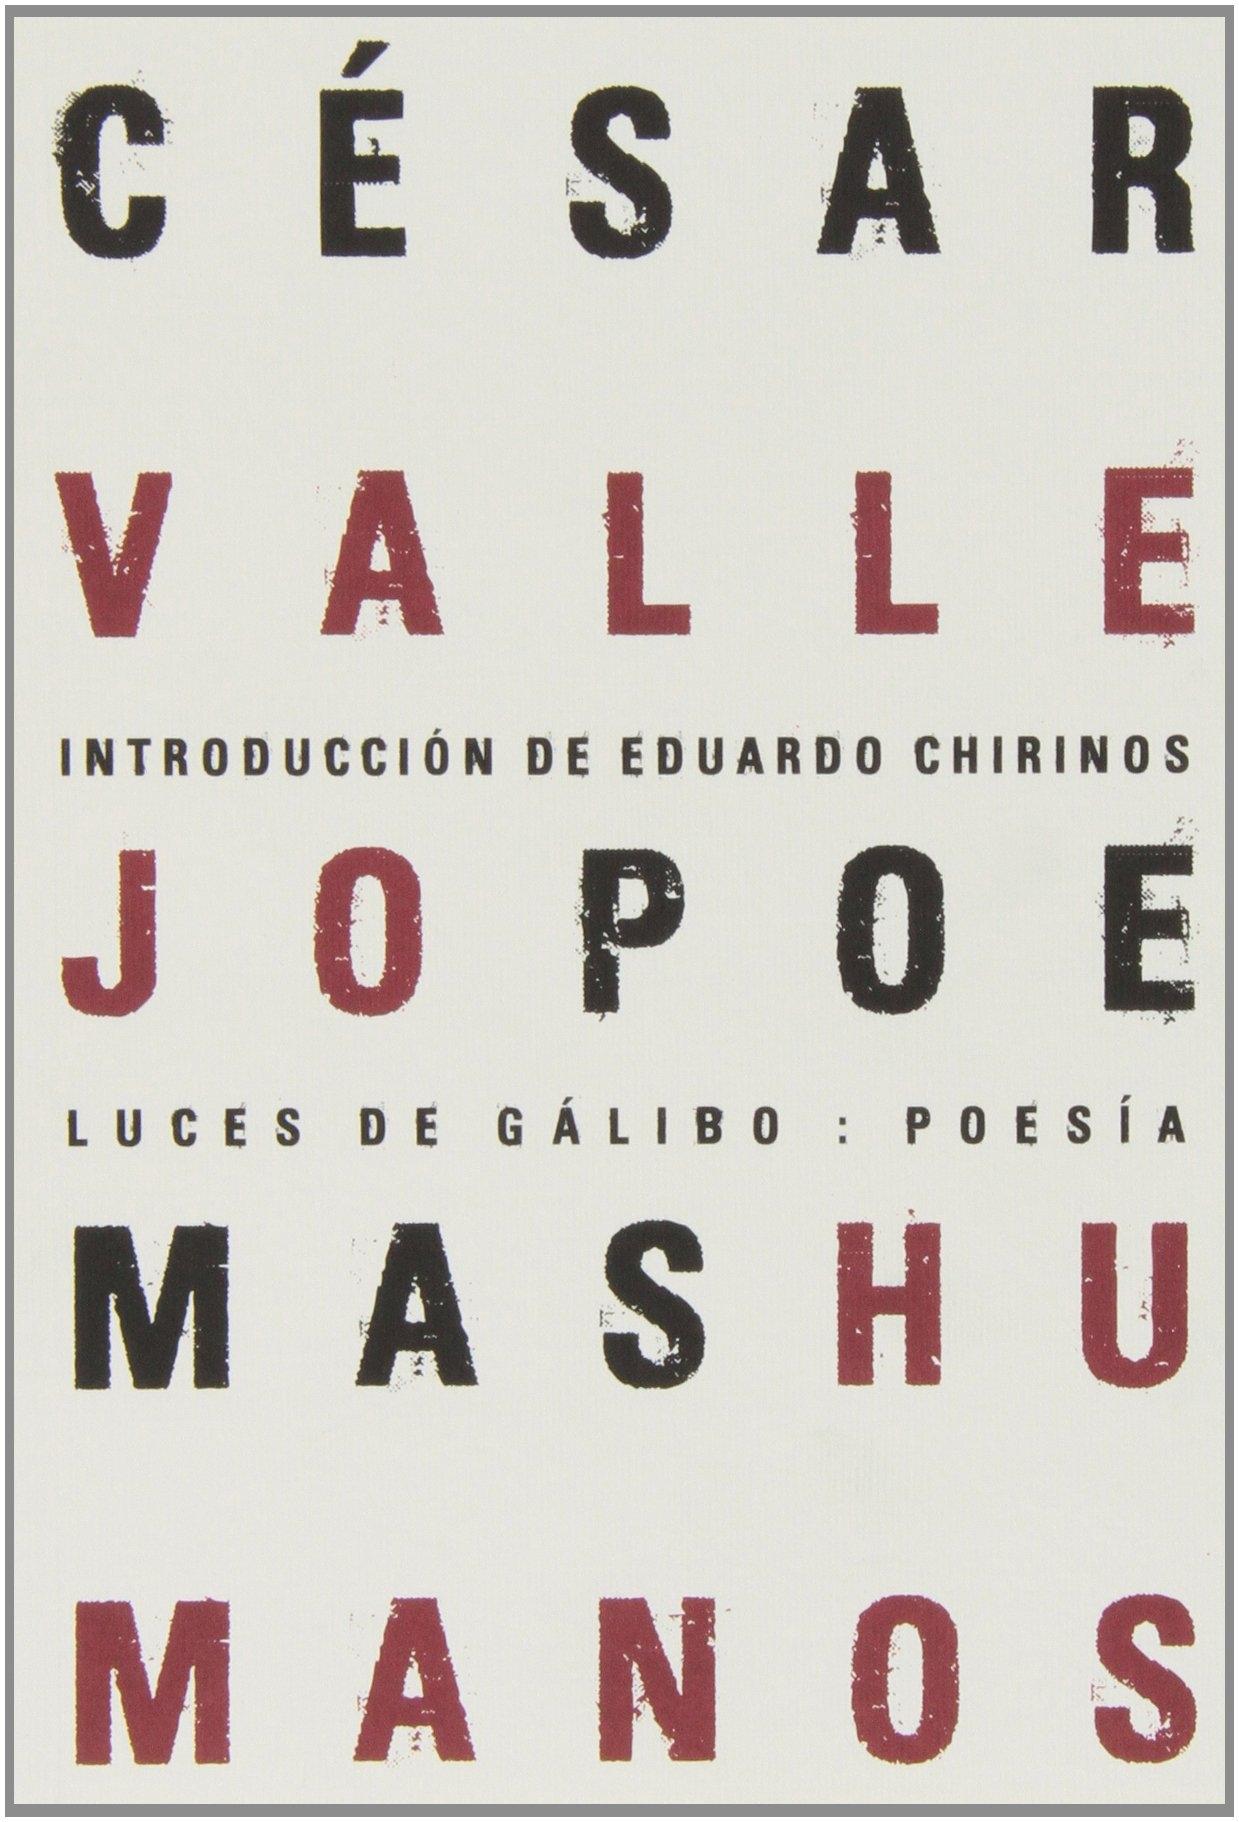 Poemas Humanos "Introducción de Eduardo Chirinos"